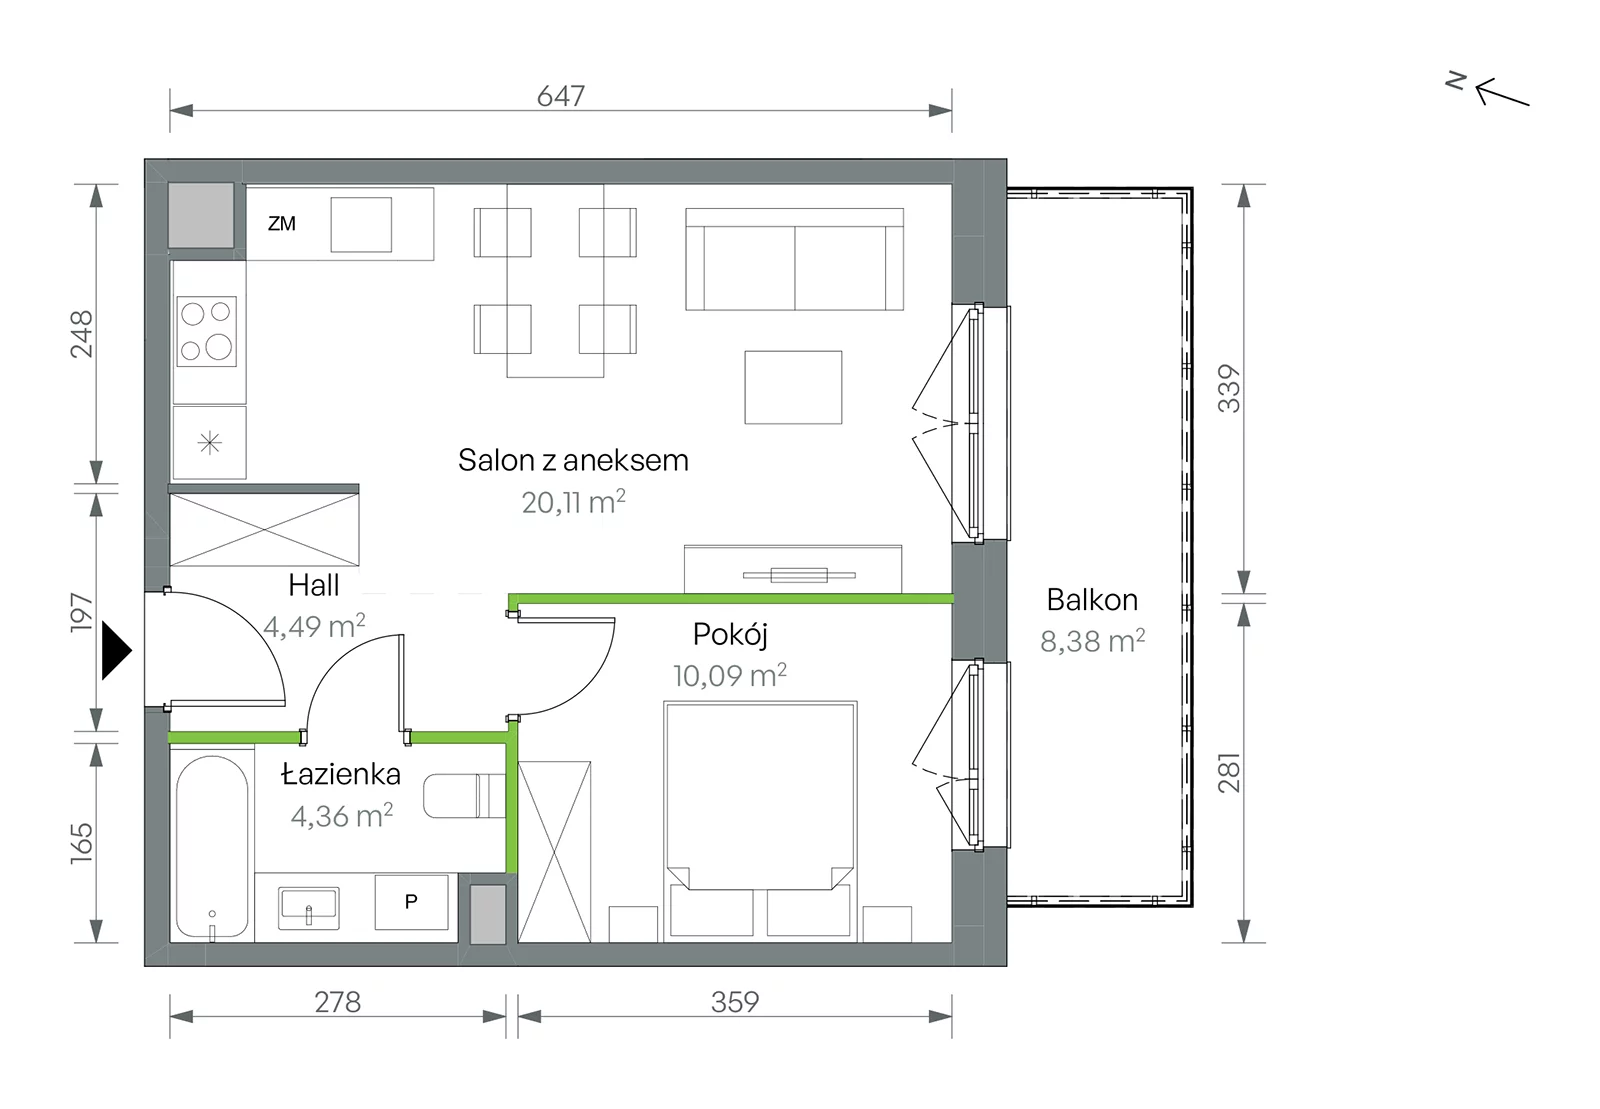 Mieszkanie 39,05 m², piętro 2, oferta nr 2/B/1/10, Oliwska Vita etap II, Warszawa, Targówek, Bródno, ul. Oliwska 11